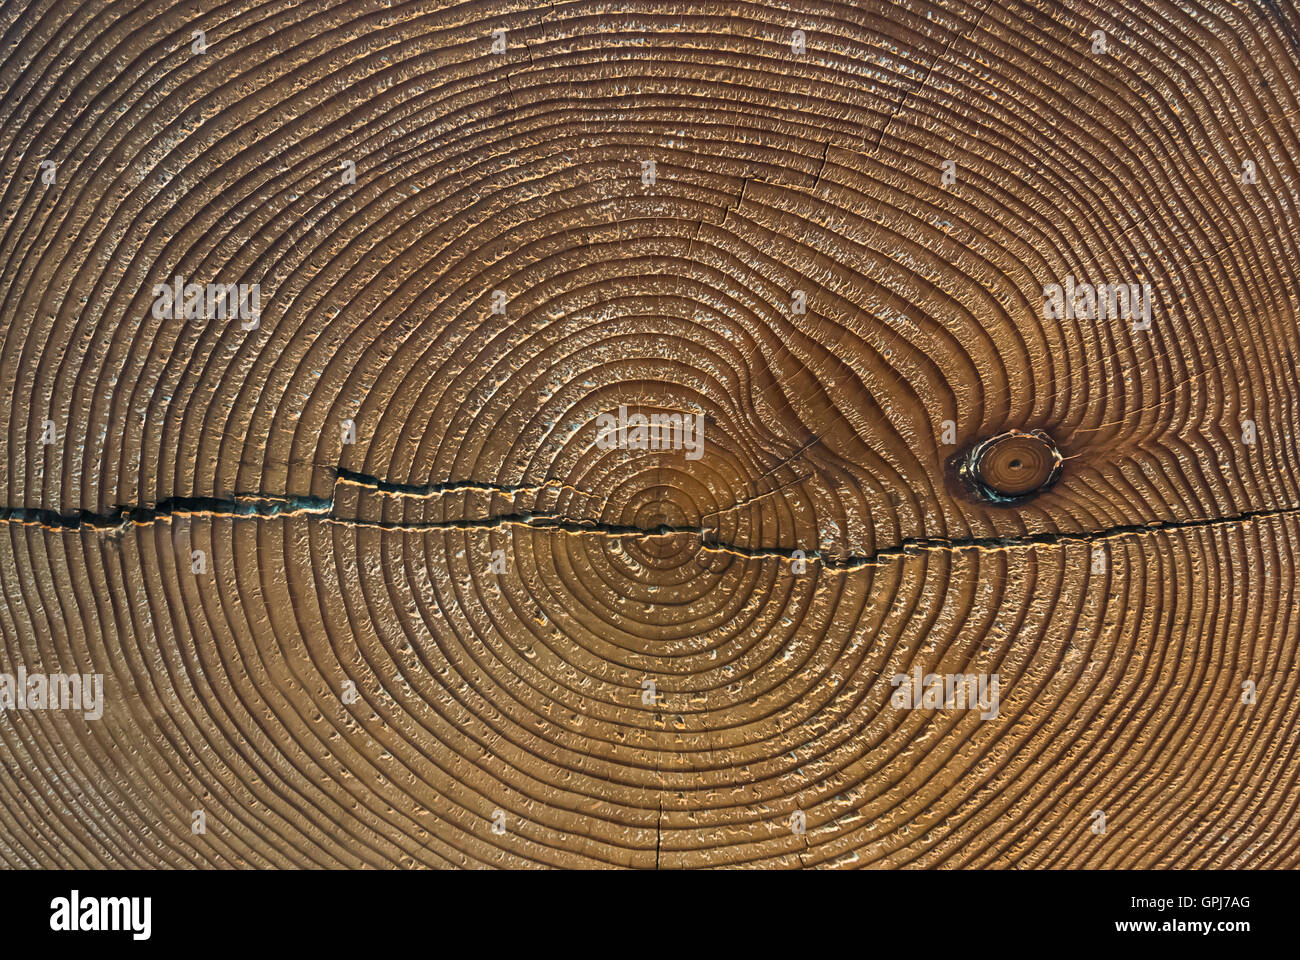 Les anneaux de croissance des arbres - Mesure de temps Banque D'Images